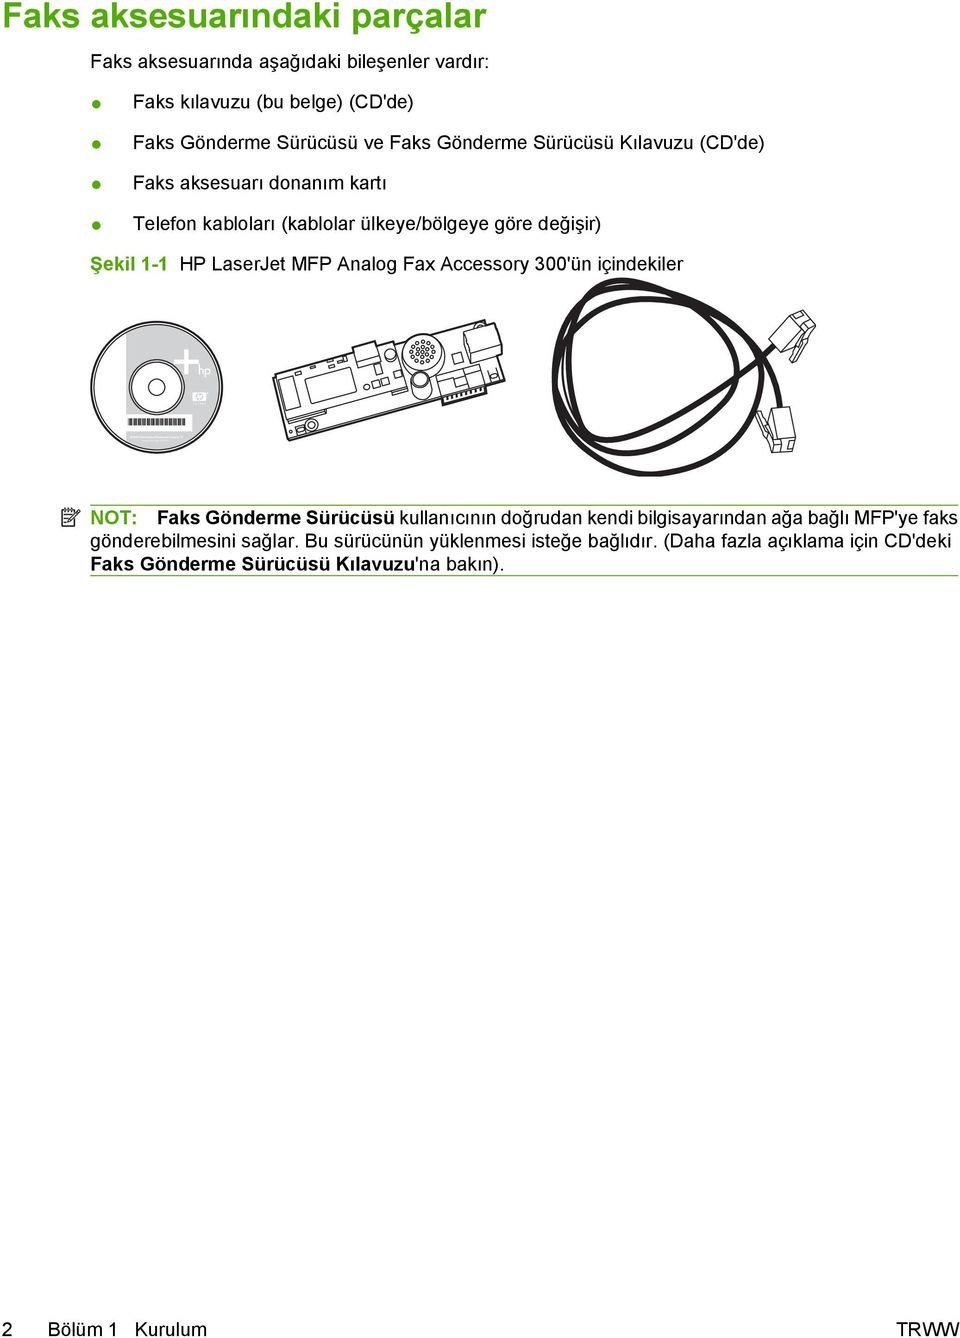 ve Faks Gönderme Sürücüsü Kılavuzu (CD'de) Faks aksesuarı donanım kartı Telefon kabloları (kablolar ülkeye/bölgeye göre değişir) Şekil 1-1 HP LaserJet